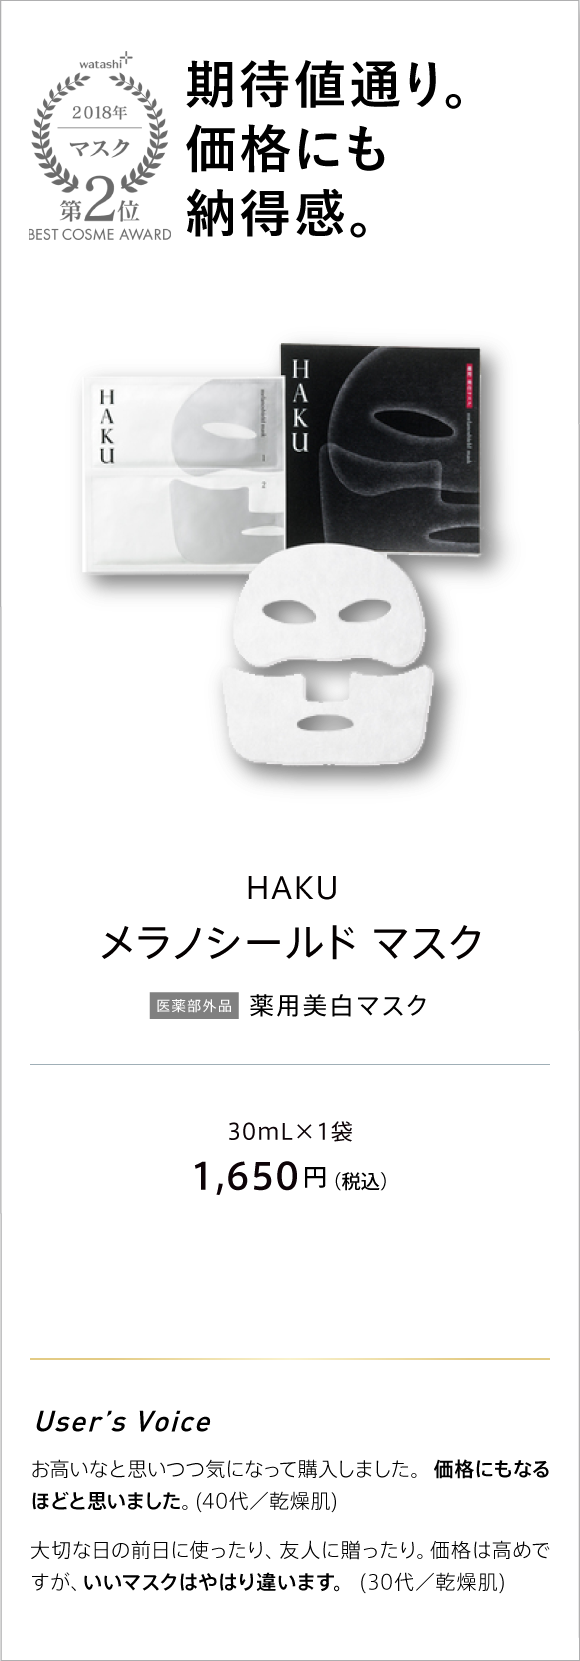 watashi+ 2018 マスク 第2位 BEST COSME AWARD 期待値通り。価格にも納得感。　HAKU メラノシールド マスク 医薬部外品 薬用美白マスク 30ML×1袋 1,650円(税込)